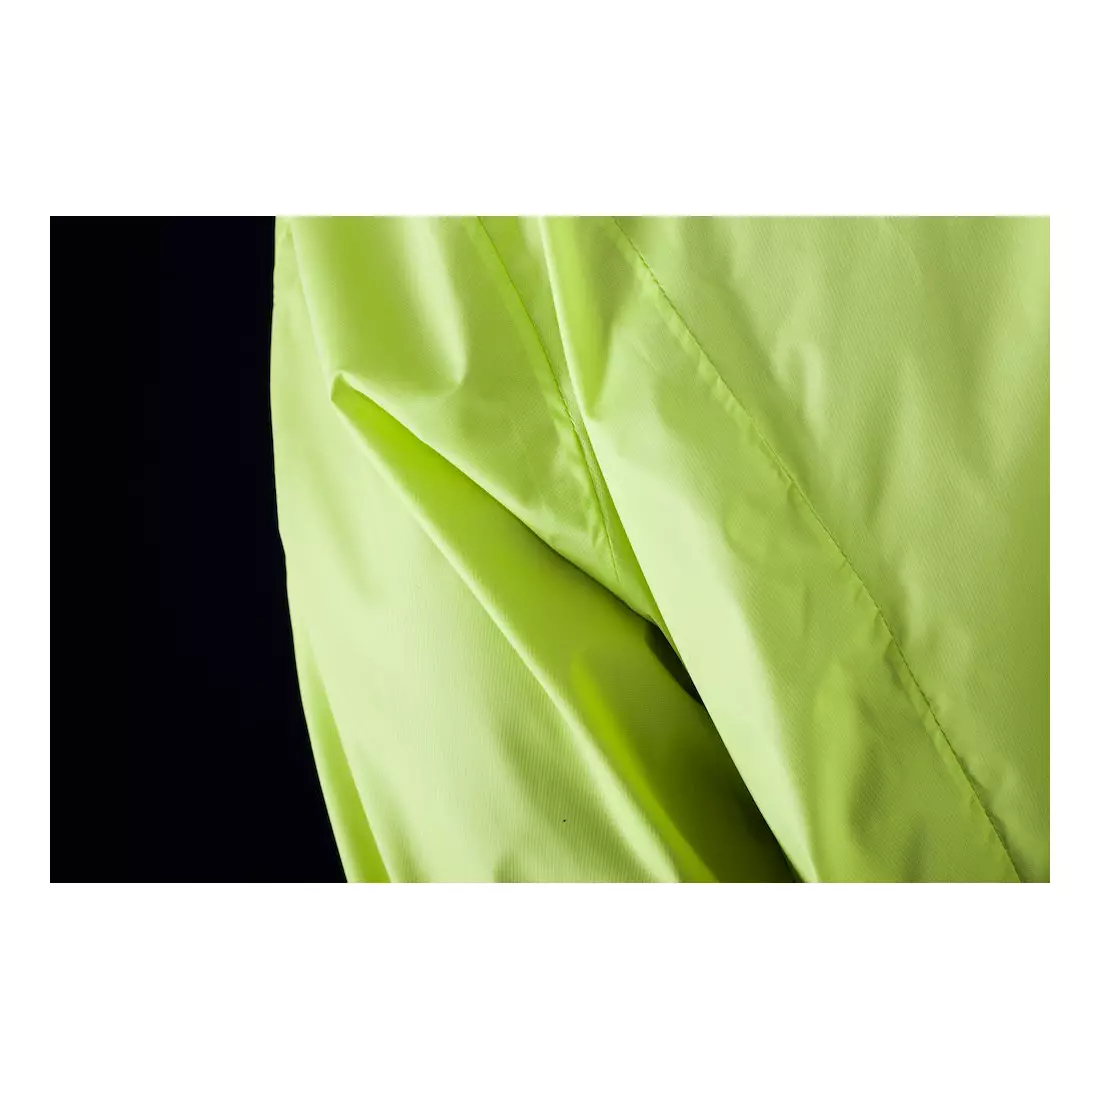 CRAFT MOVE férfi esőálló kerékpáros kabát 1902578-2851 szín: fluor